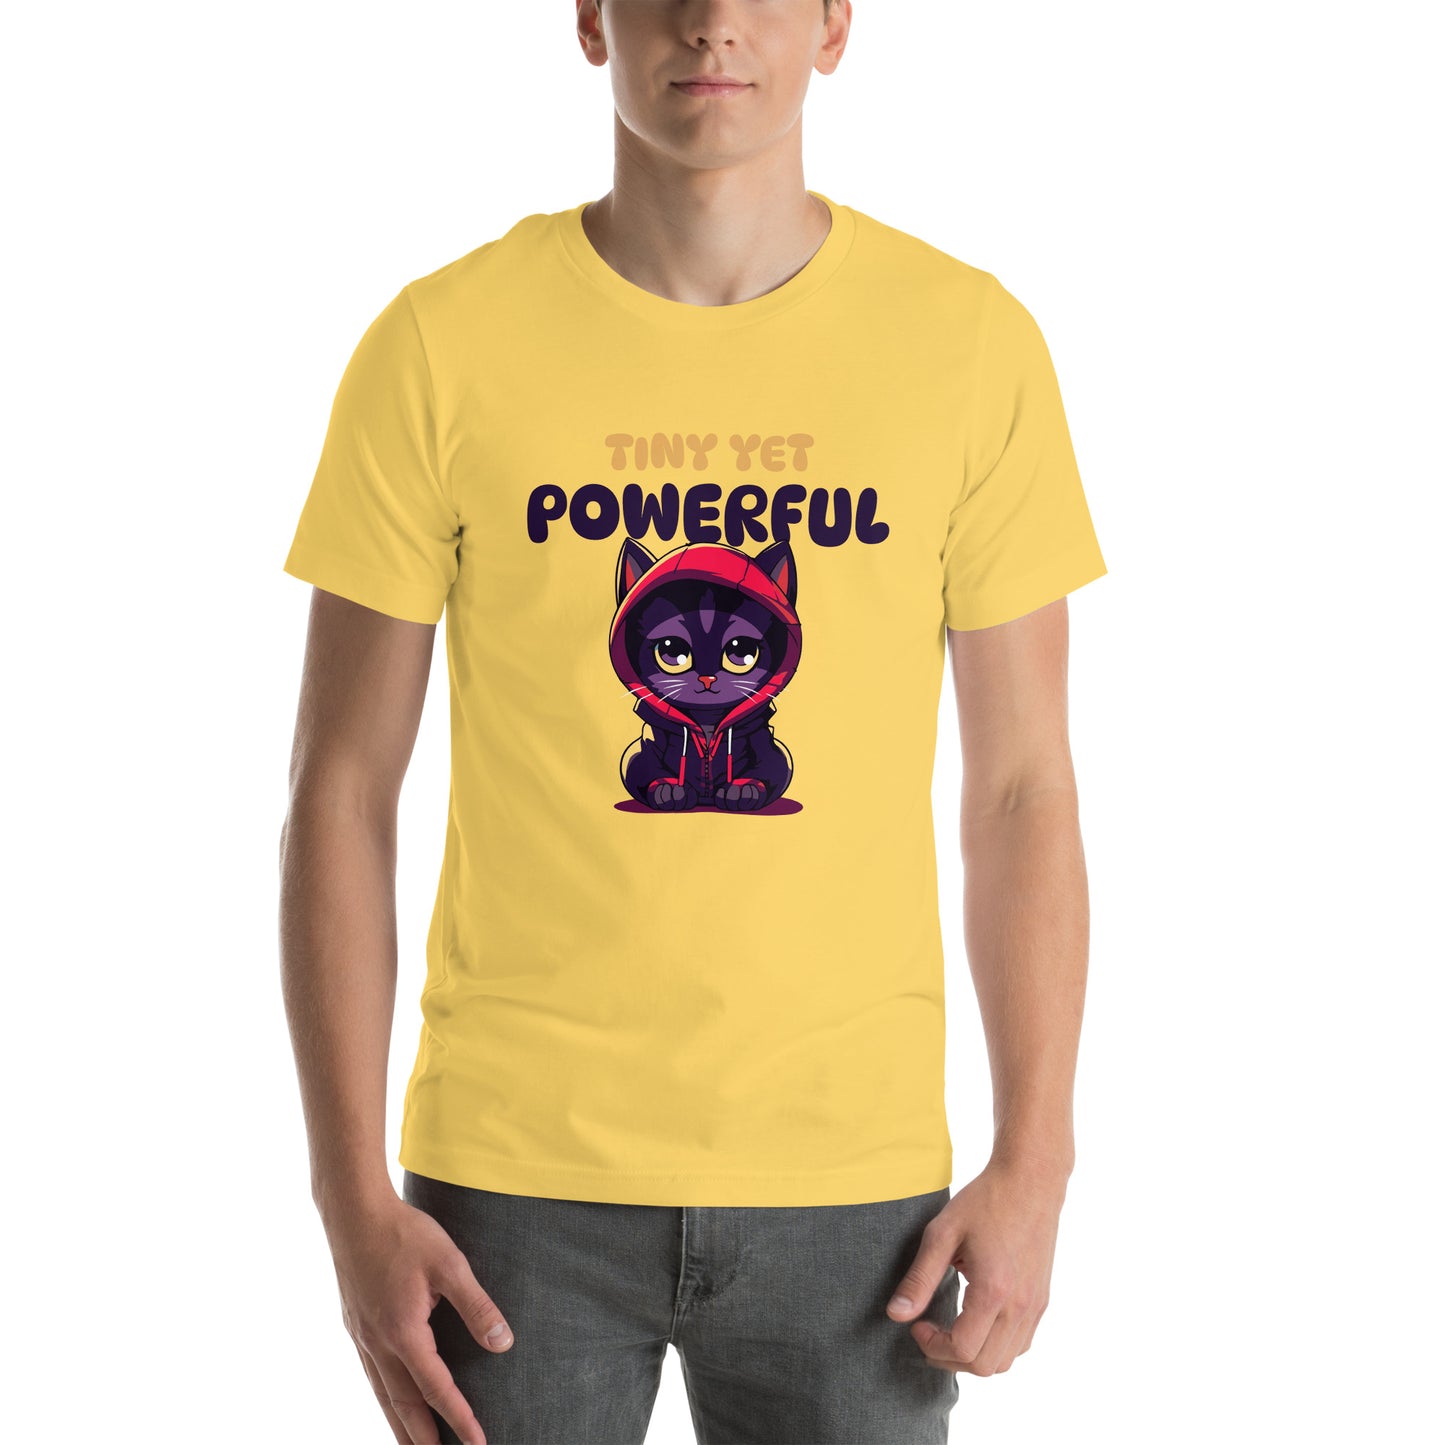 Tiny Yet powerful Unisex t-shirt